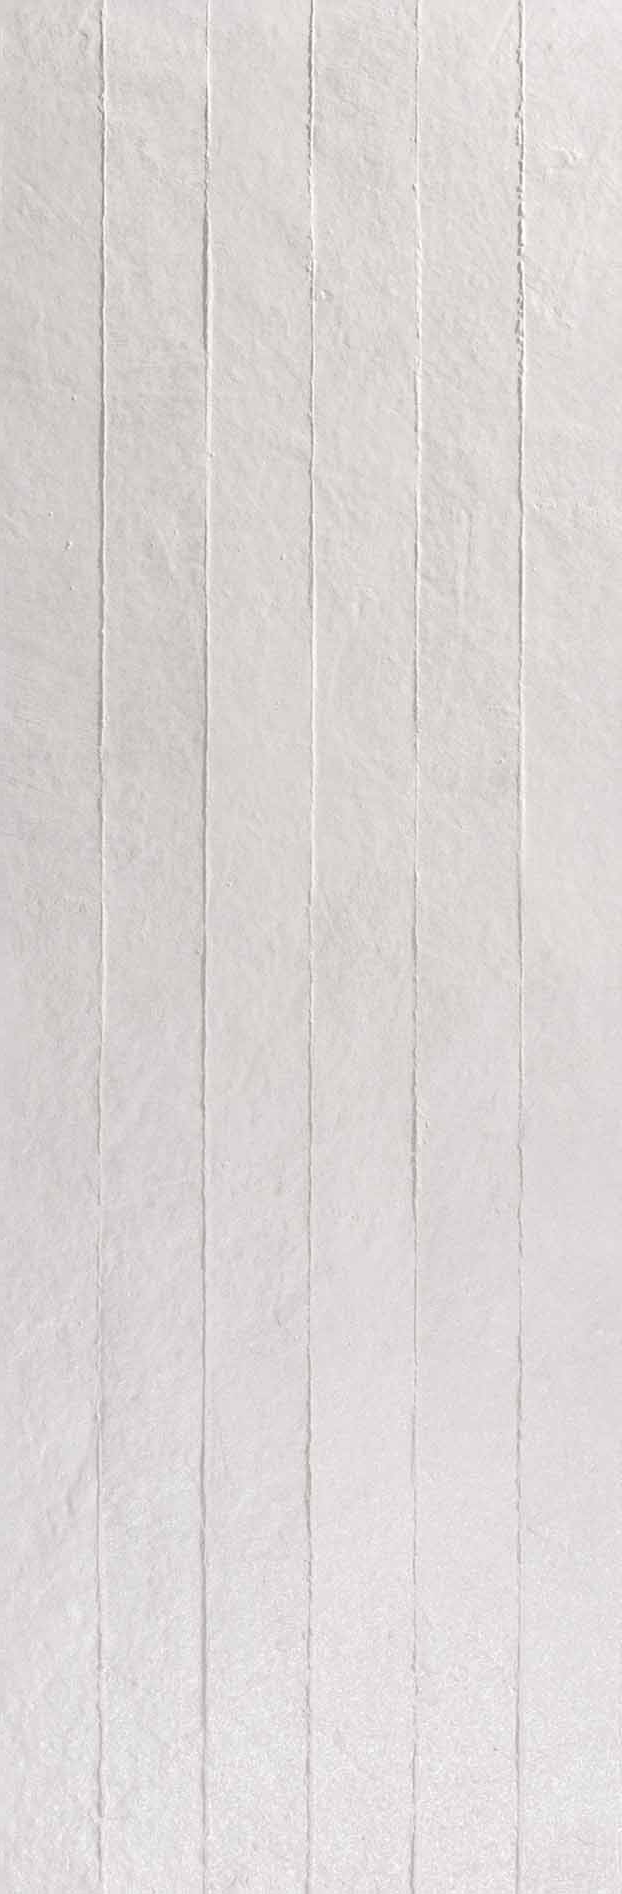 Faïence Newton Pearl RLV rectifié 90 x 30cm, Pate blanche, pour intérieur et extérieur